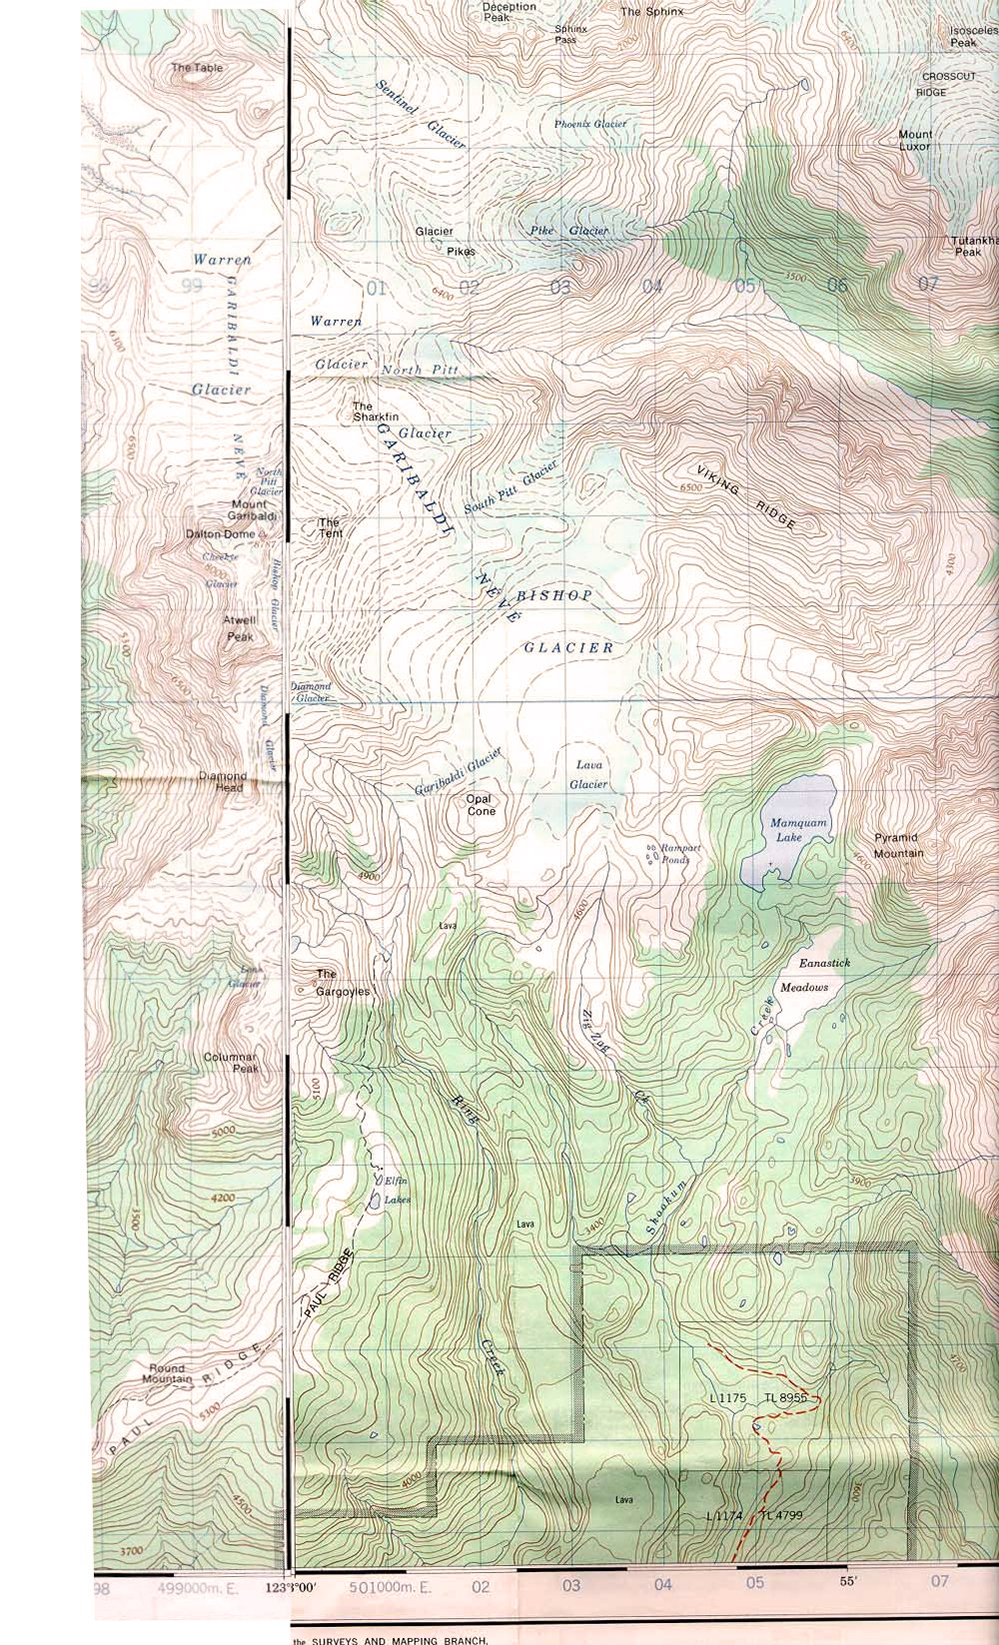 Carte topographique du névé Garibaldi illustrant les vallées, les glaciers et les variations de terrain.